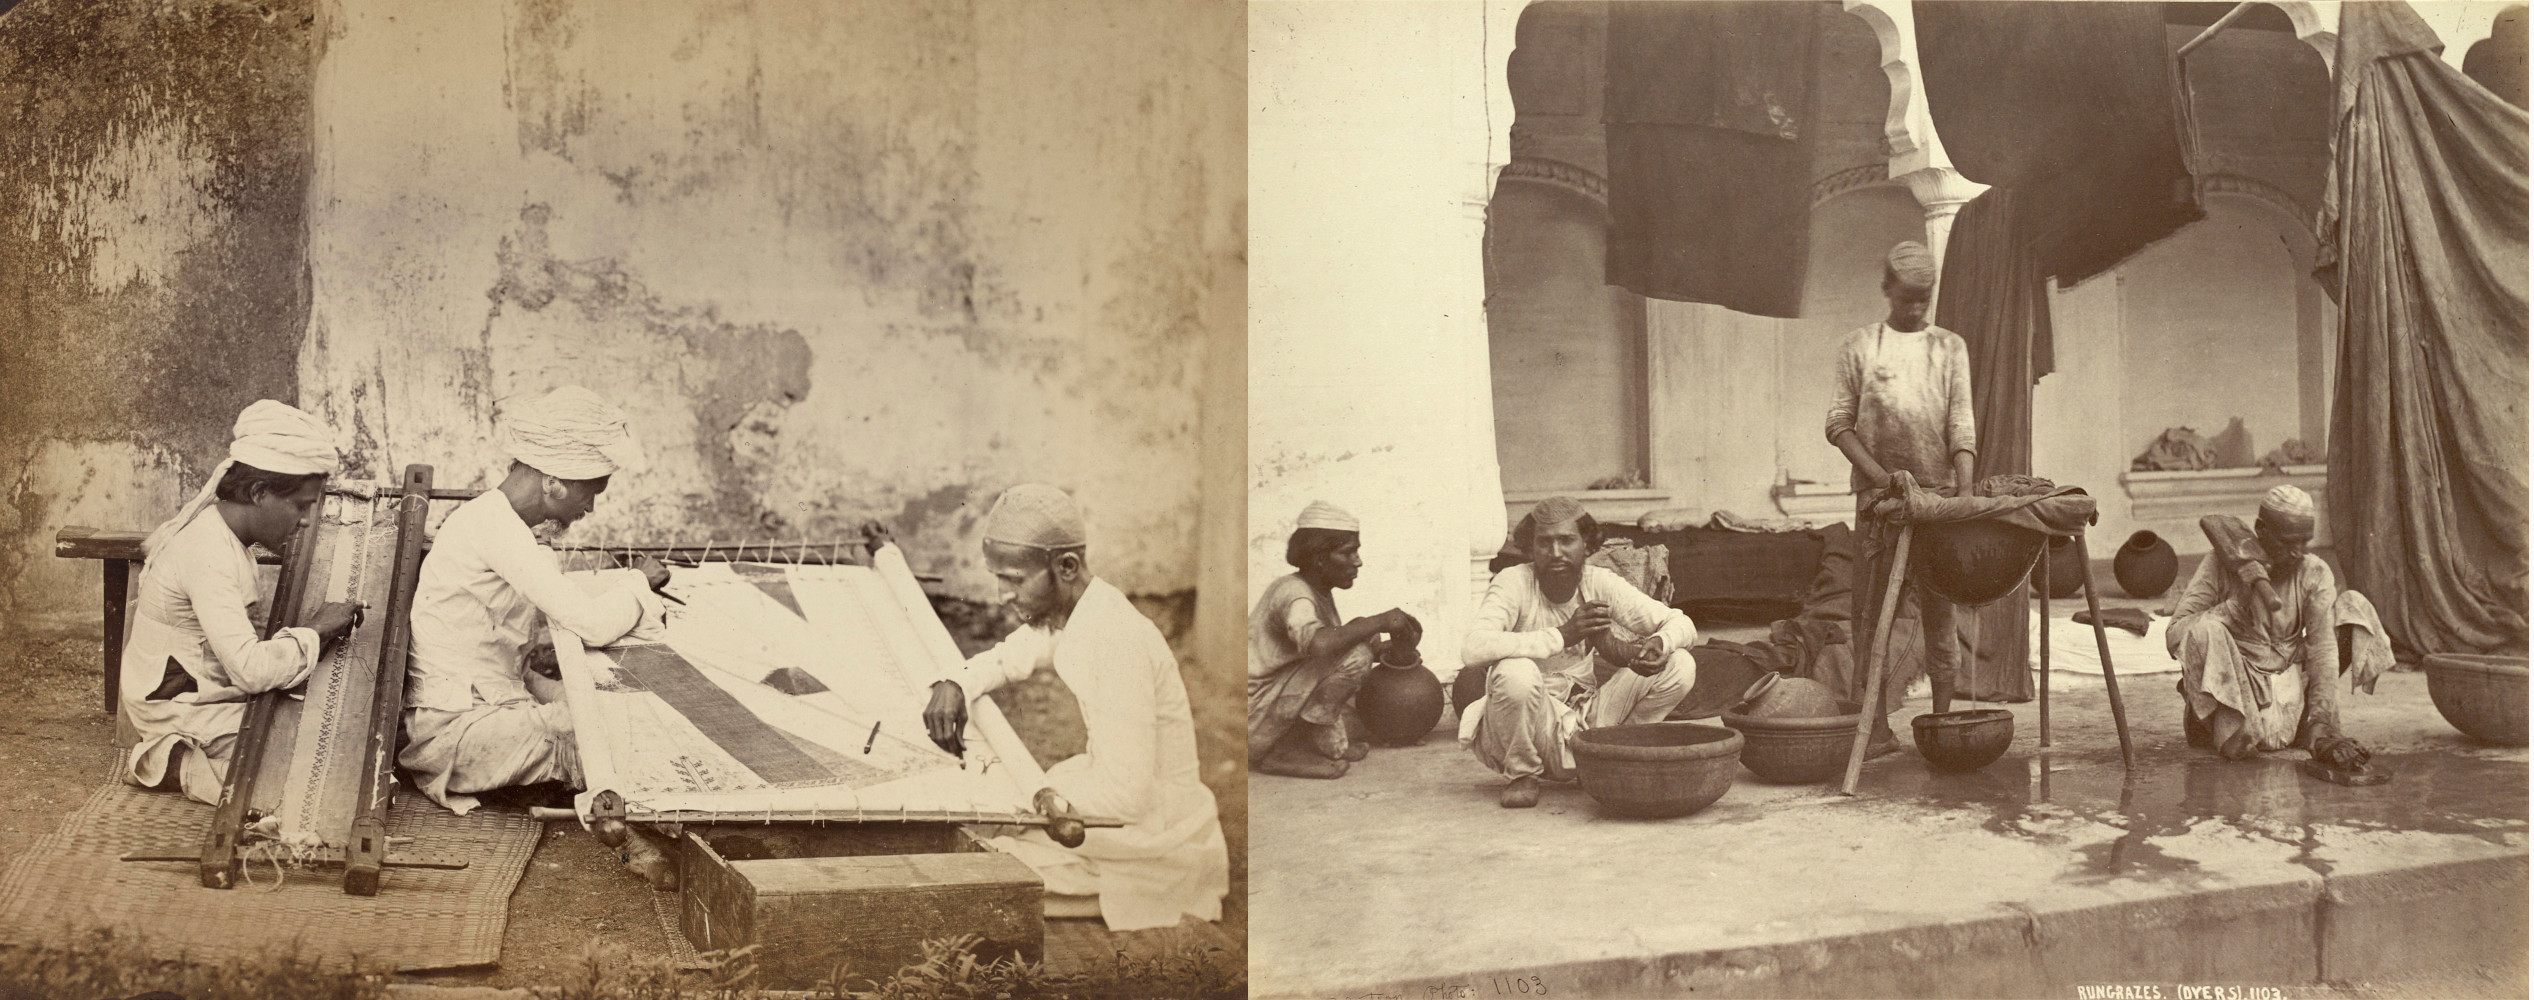 ভারতের কারিগরি বোঝাপড়া। ১৮৬০-এর আশেপাশের ছবি। বাঁদিকে সোনার সূচীশিল্পের কারিগর, ডানদিকে রঙ্গরেজ-রা (ডায়ার)। ছবিসূত্র - ব্রিটিশ লাইব্রেরি।